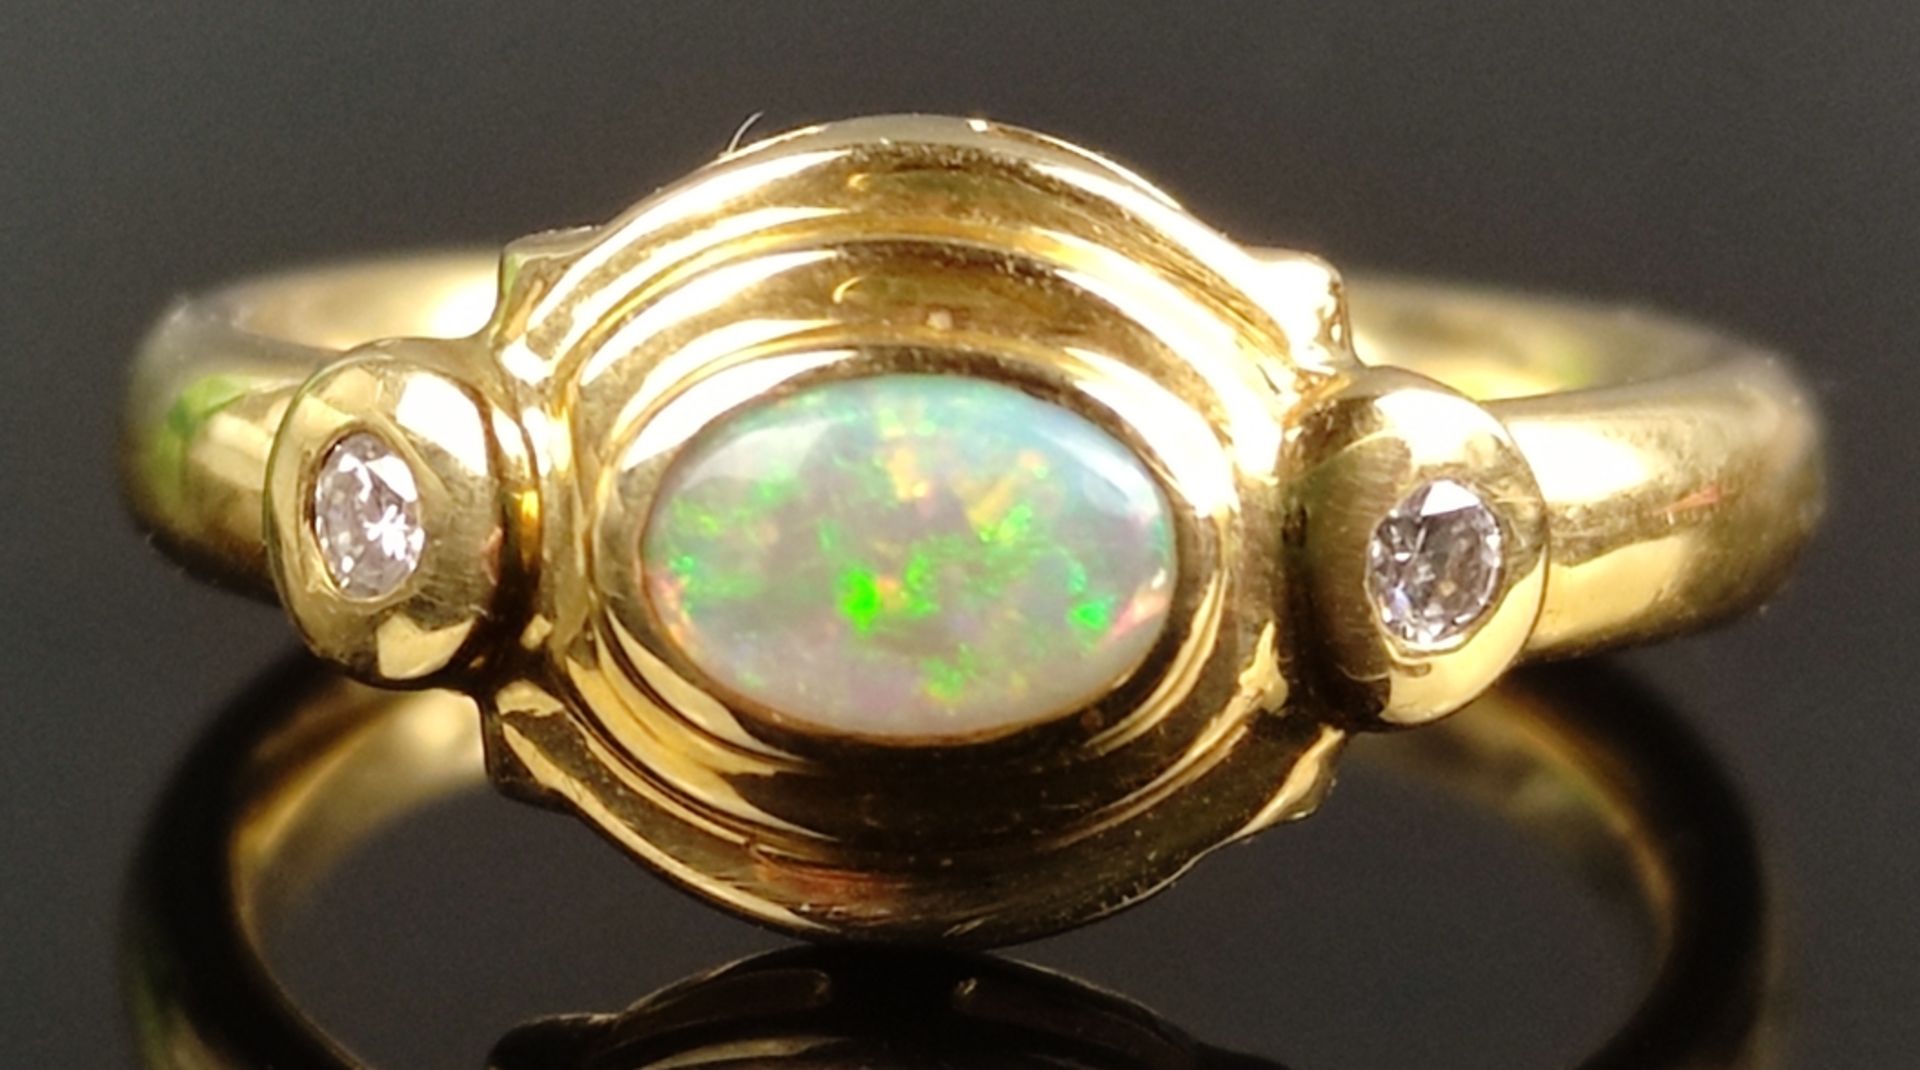 Opal-Diamant-Ring, mittig Opal-Cabochon von schönem Farbenspiel, ca. 4x7mm, daneben je ein kleiner  - Bild 2 aus 3